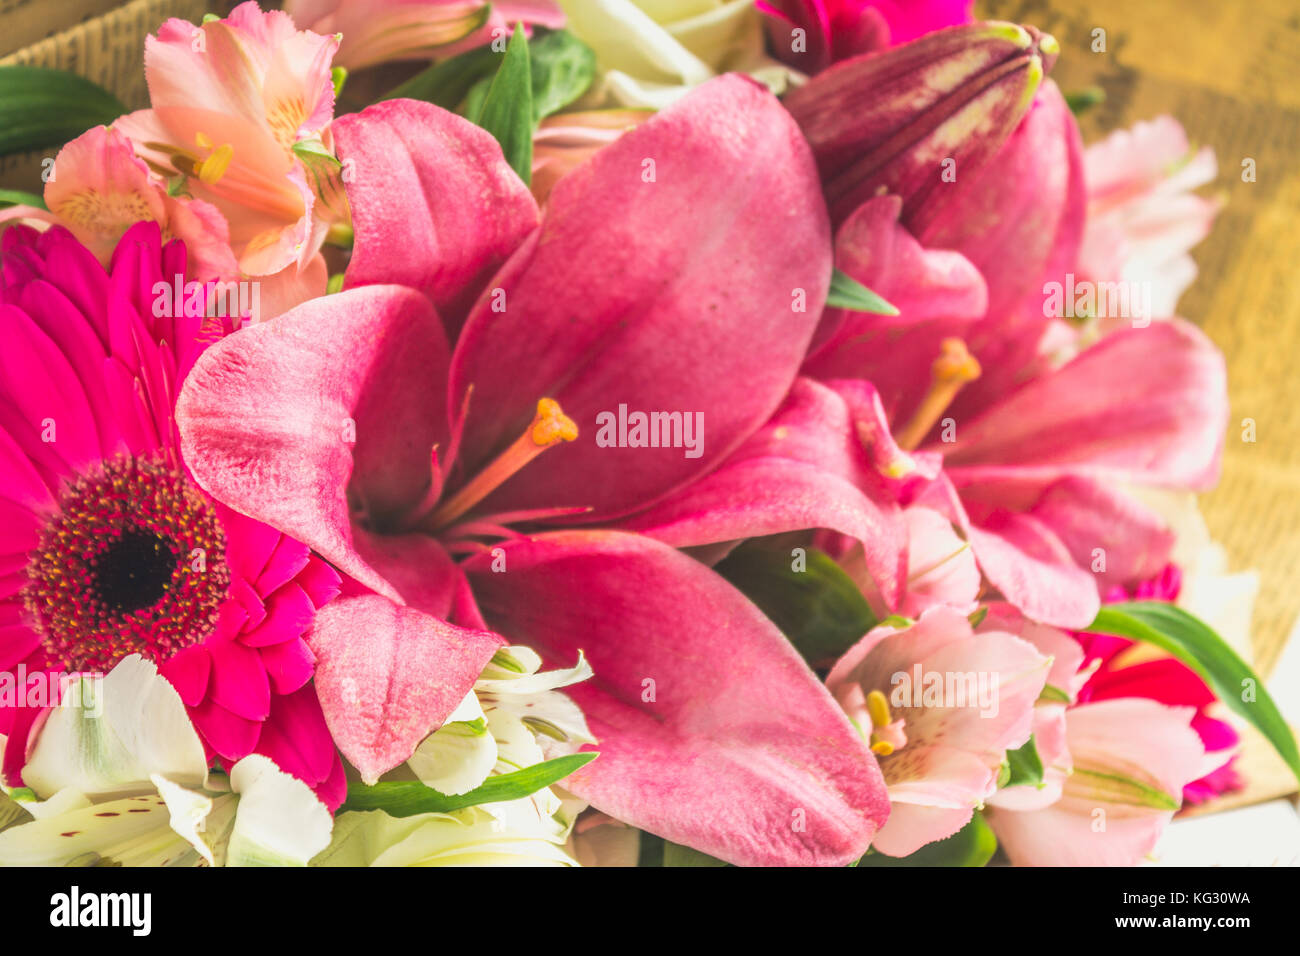 Ein Blumenstrauß aus Lilien, Gerbera, weiße Rosen und alstroemeria auf  einem weißen Holztisch. Ein Urlaub, ein Geschenk Stockfotografie - Alamy